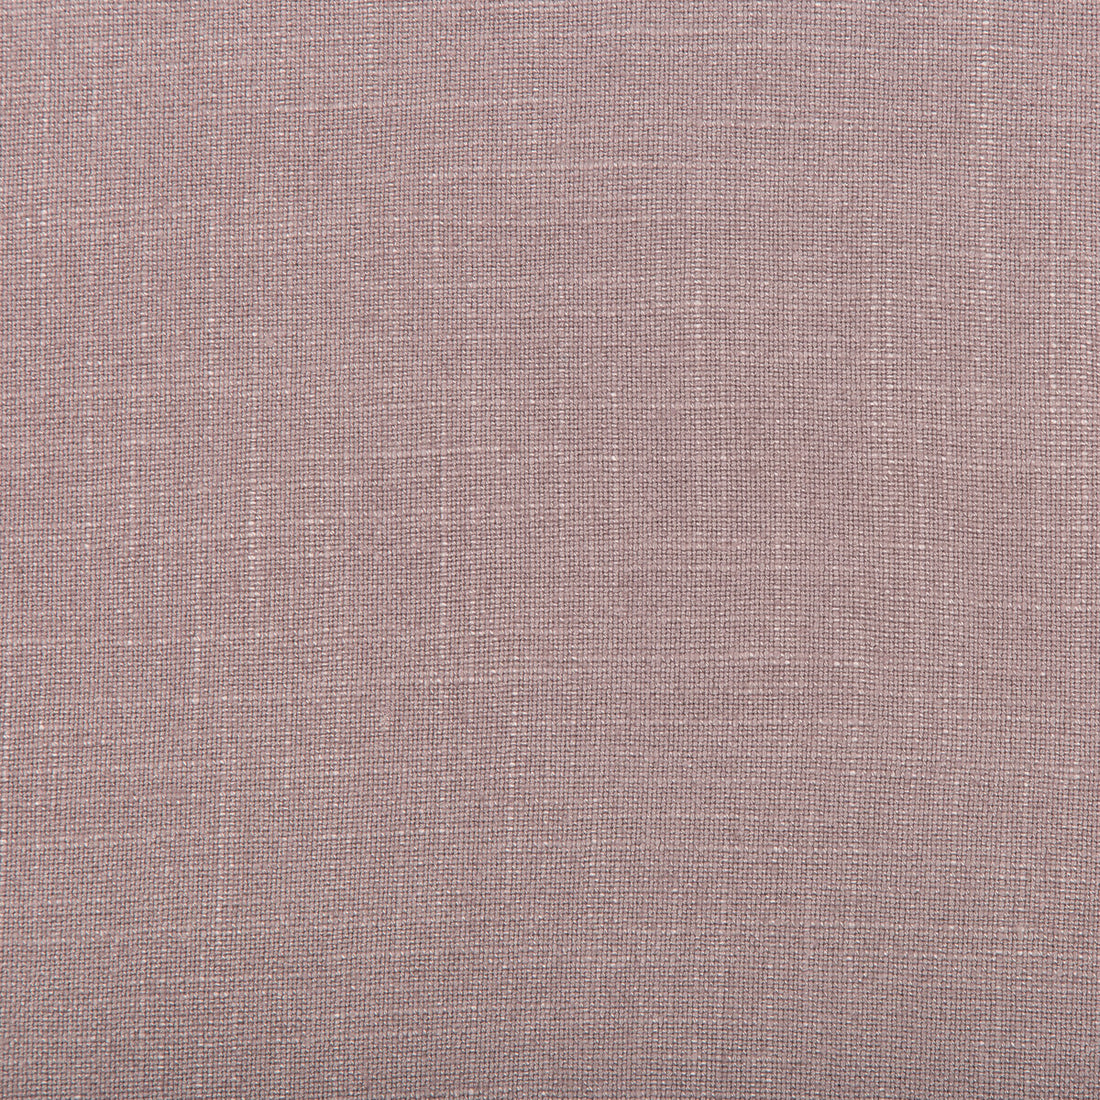 Aura fabric in violet color - pattern 35520.110.0 - by Kravet Design